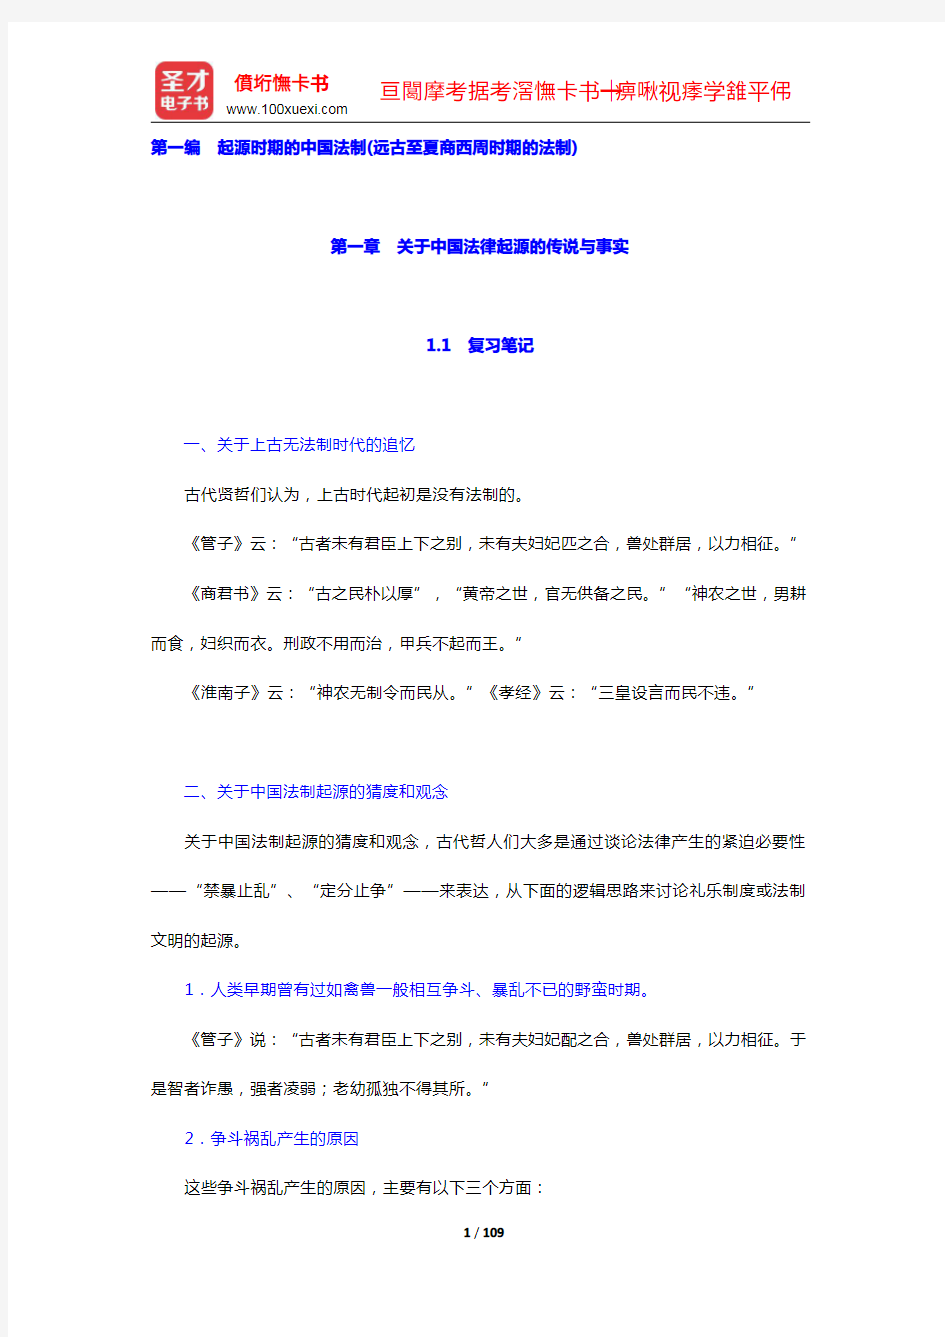 范忠信《中国法制史》笔记和课后习题(含考研真题)详解(1-6章)(圣才出品)